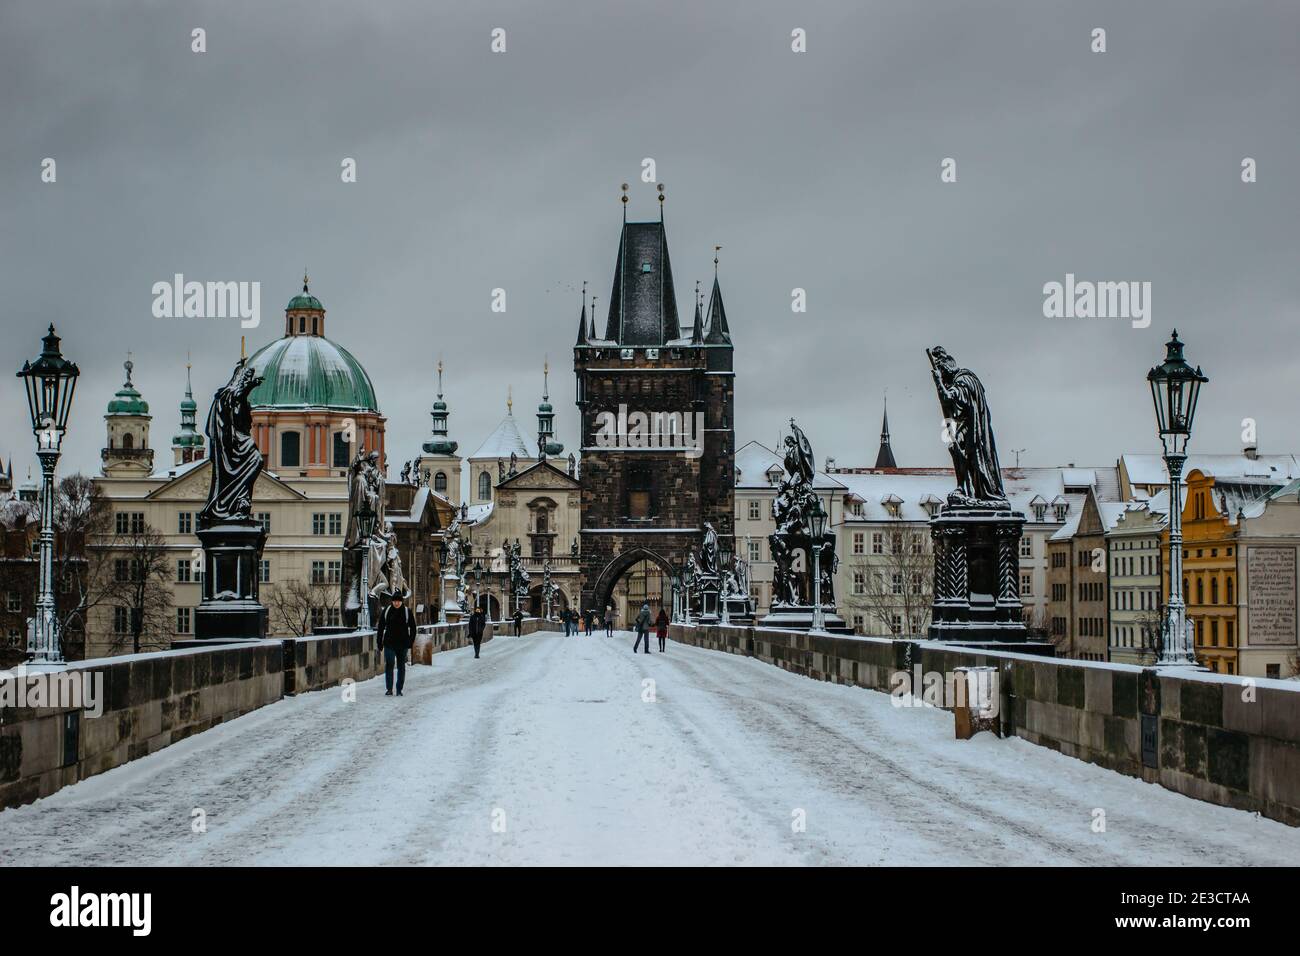 Prag, Tschechische Republik - 14. Januar 2021. Karlsbrücke, Altstädter Brückenturm mit Schnee bedeckt. Menschen, die im kalten Winter durch die Stadt wandern Stockfoto